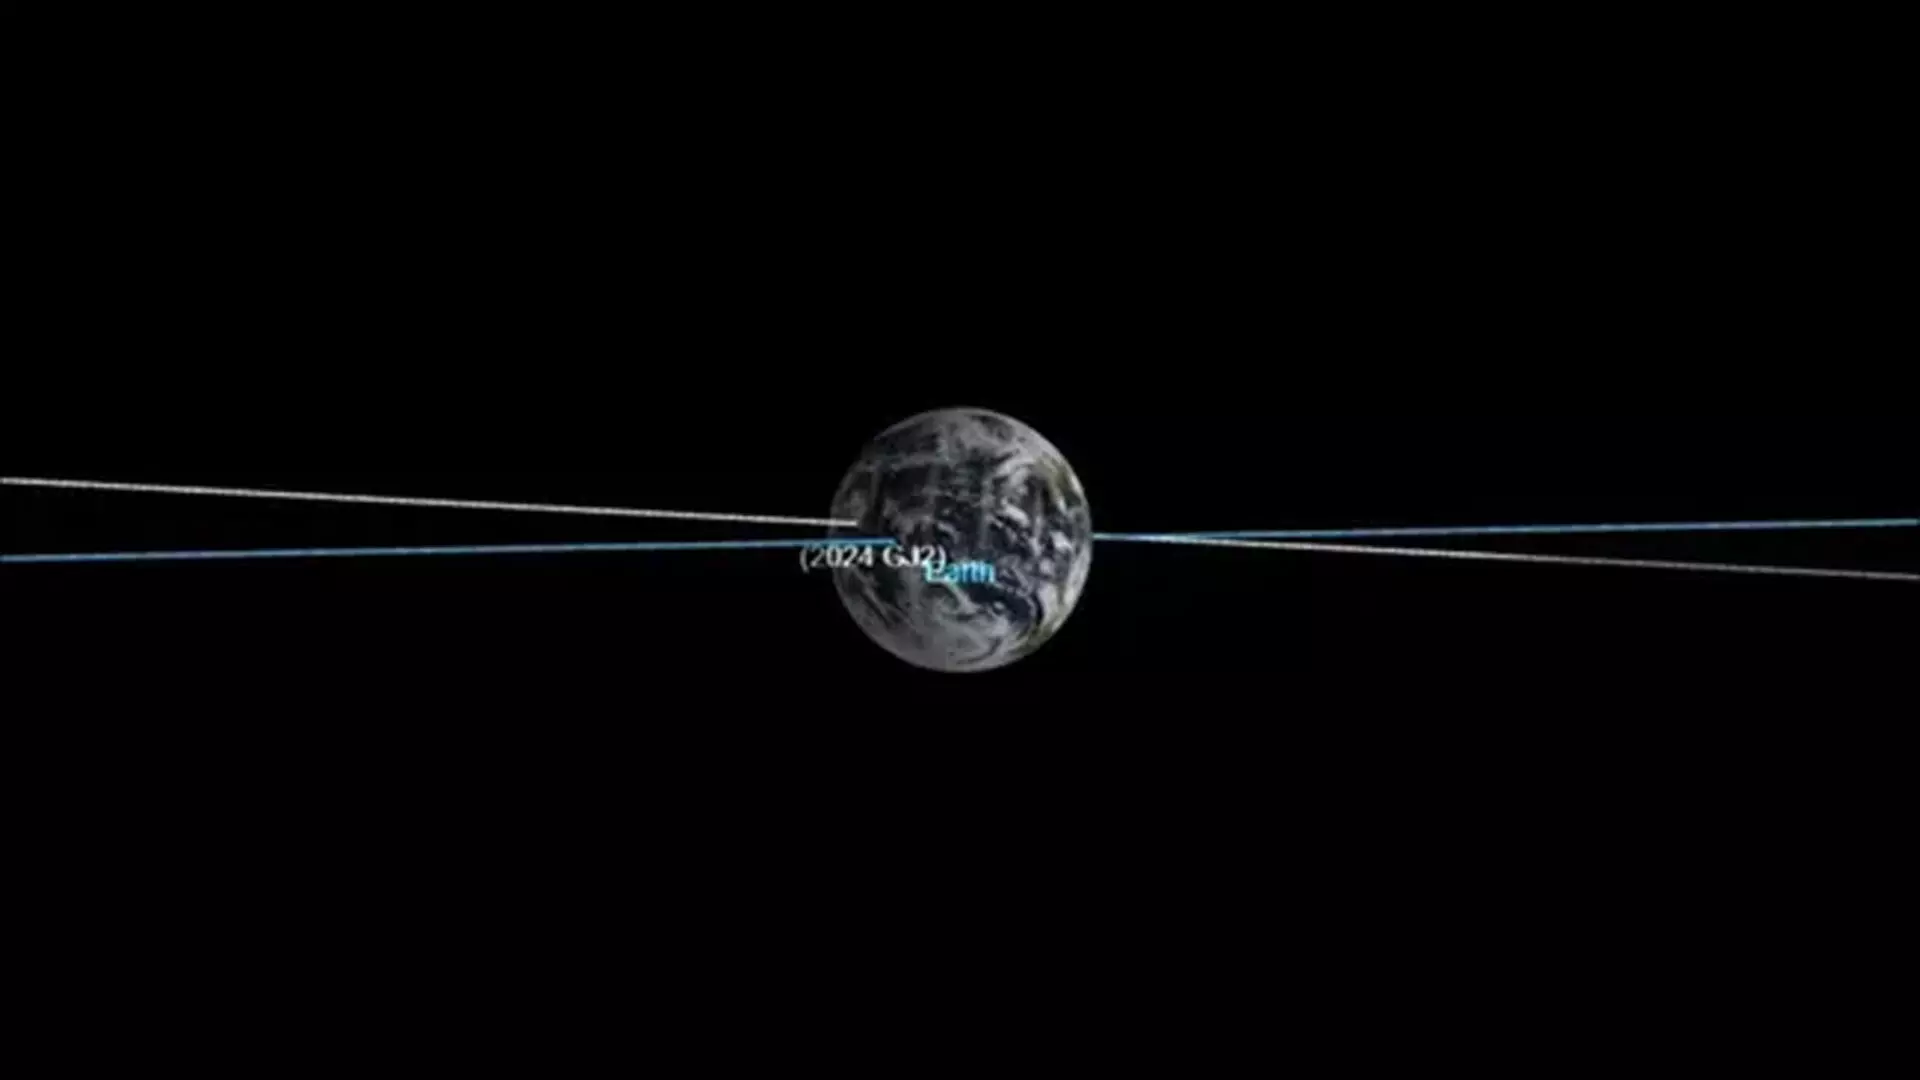 कार के आकार का एस्टेरोइड चंद्रमा की 1/30वीं दूरी पर पृथ्वी के पास से उड़ा